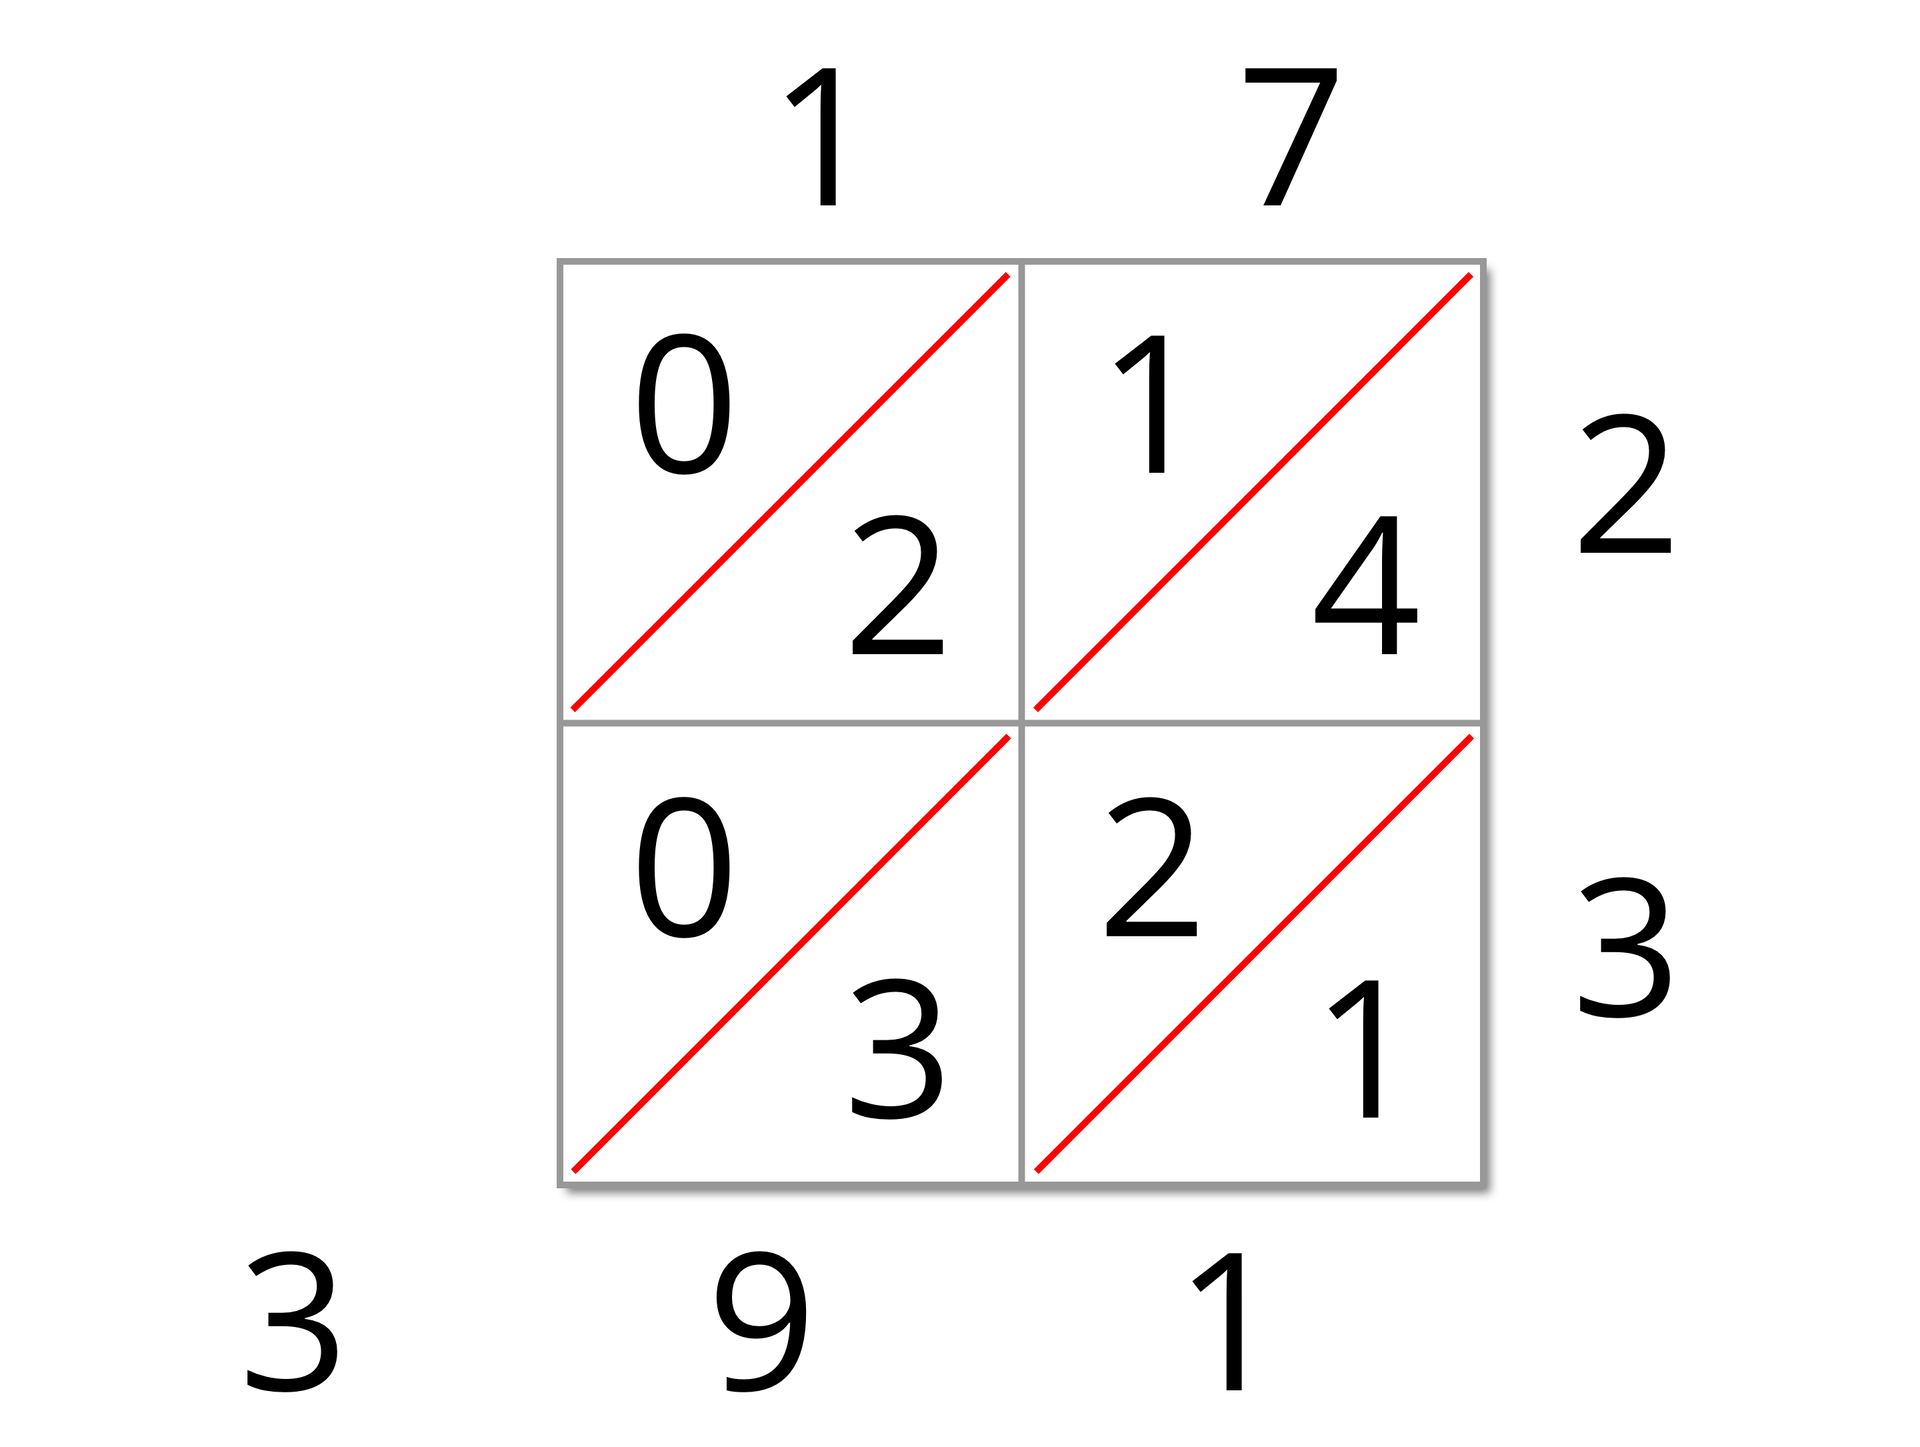 Na ilustracji przedstawiony jest duży kwadrat złożony z czterech mniejszych kwadratów. Przy ich bokach są zapisane cyfry. Wszystkie kwadraty są podzielone na połowy za pomocą równoległych przekątnych idących z górnego prawego wierzchołka do dolnego lewego wierzchołka. Nad kwadratem położonym w lewym górnym rogu jest cyfra jeden.  W nim w lewym górnym rogu jest zero, w prawym dolnym dwa. Nad kwadratem znajdującym się w prawym górnym rogu, jest cyfra siedem, a po prawej stronie figury cyfra 2. W lewym górnym rogu tego kwadratu jest cyfra 1, a w prawym dolnym cyfra 4. W lewym dolnym kwadracie mamy odpowiednio 0 i 3, pod kwadratem 9. W prawym dolnym kwadracie znajdują się odpowiednio cyfry 2 i 1. Pod tym kwadratem jest liczba 1, a po jego prawej stronie 3. Jest też jedna cyfra – trójka – która umieszczona jest poniżej dużego kwadratu po jego lewej stronie na tym samym poziomie co 9 i 1.